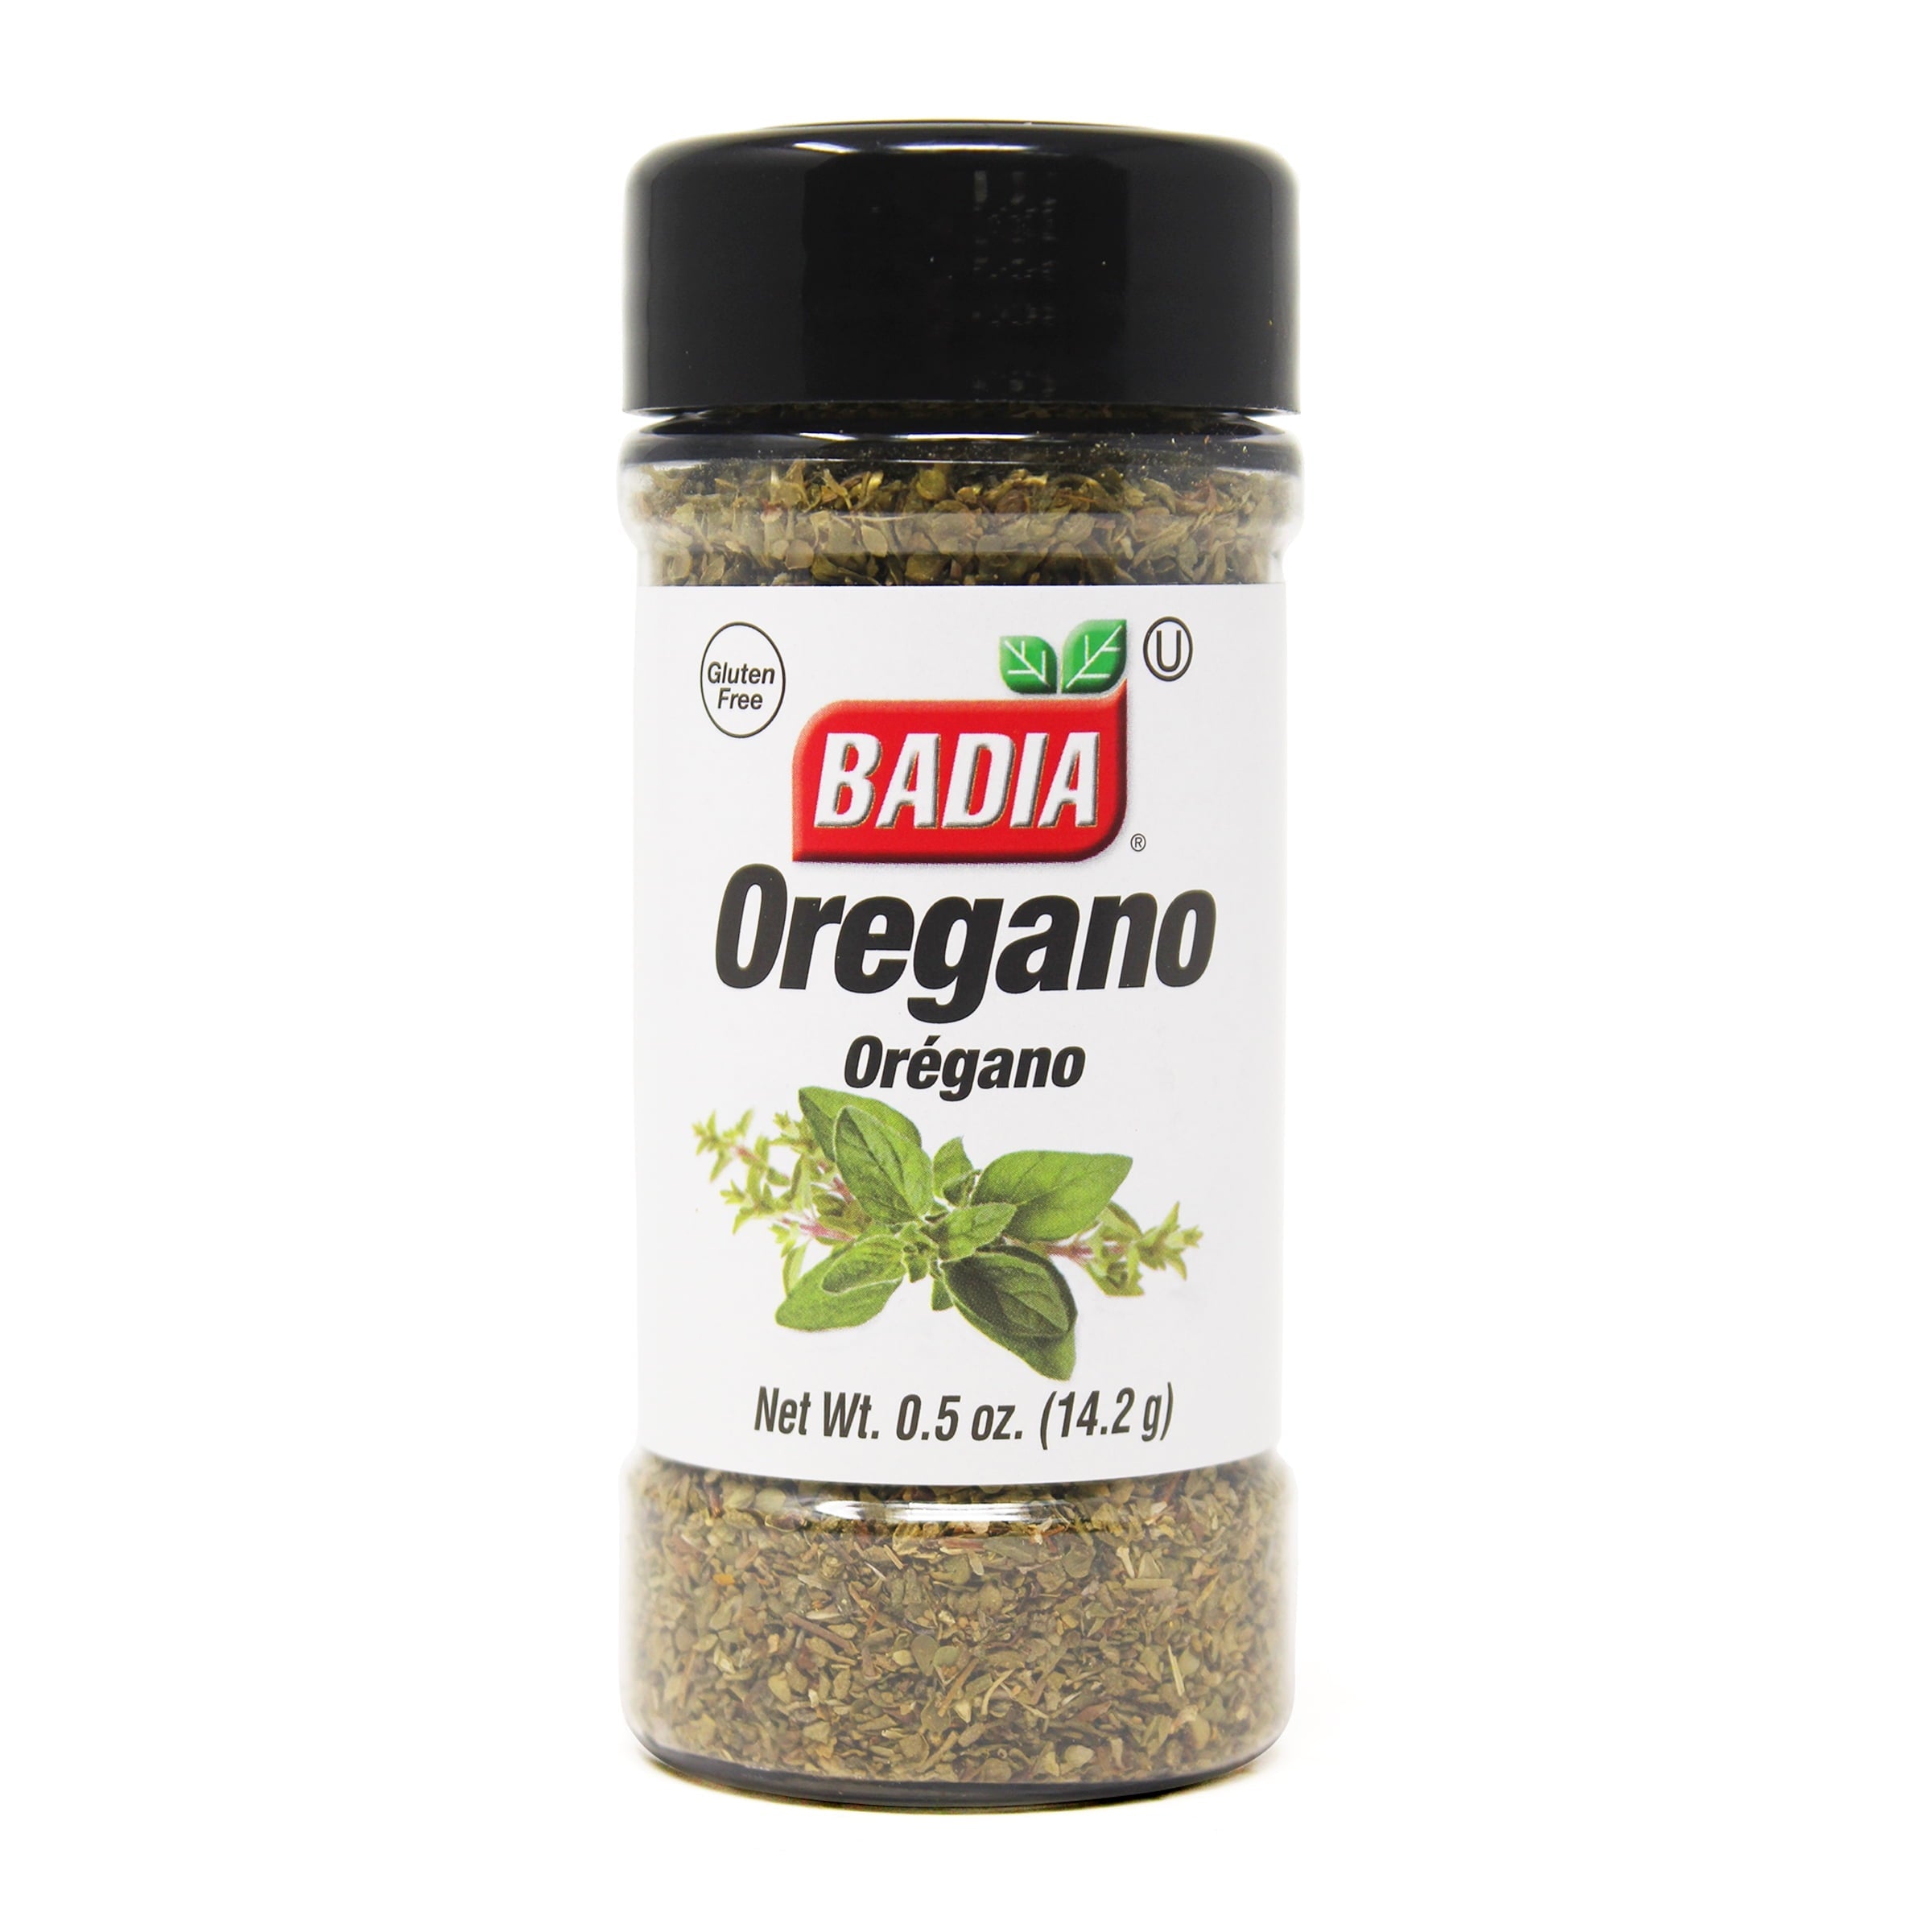 Badia Oregano 0.5 oz Shaker